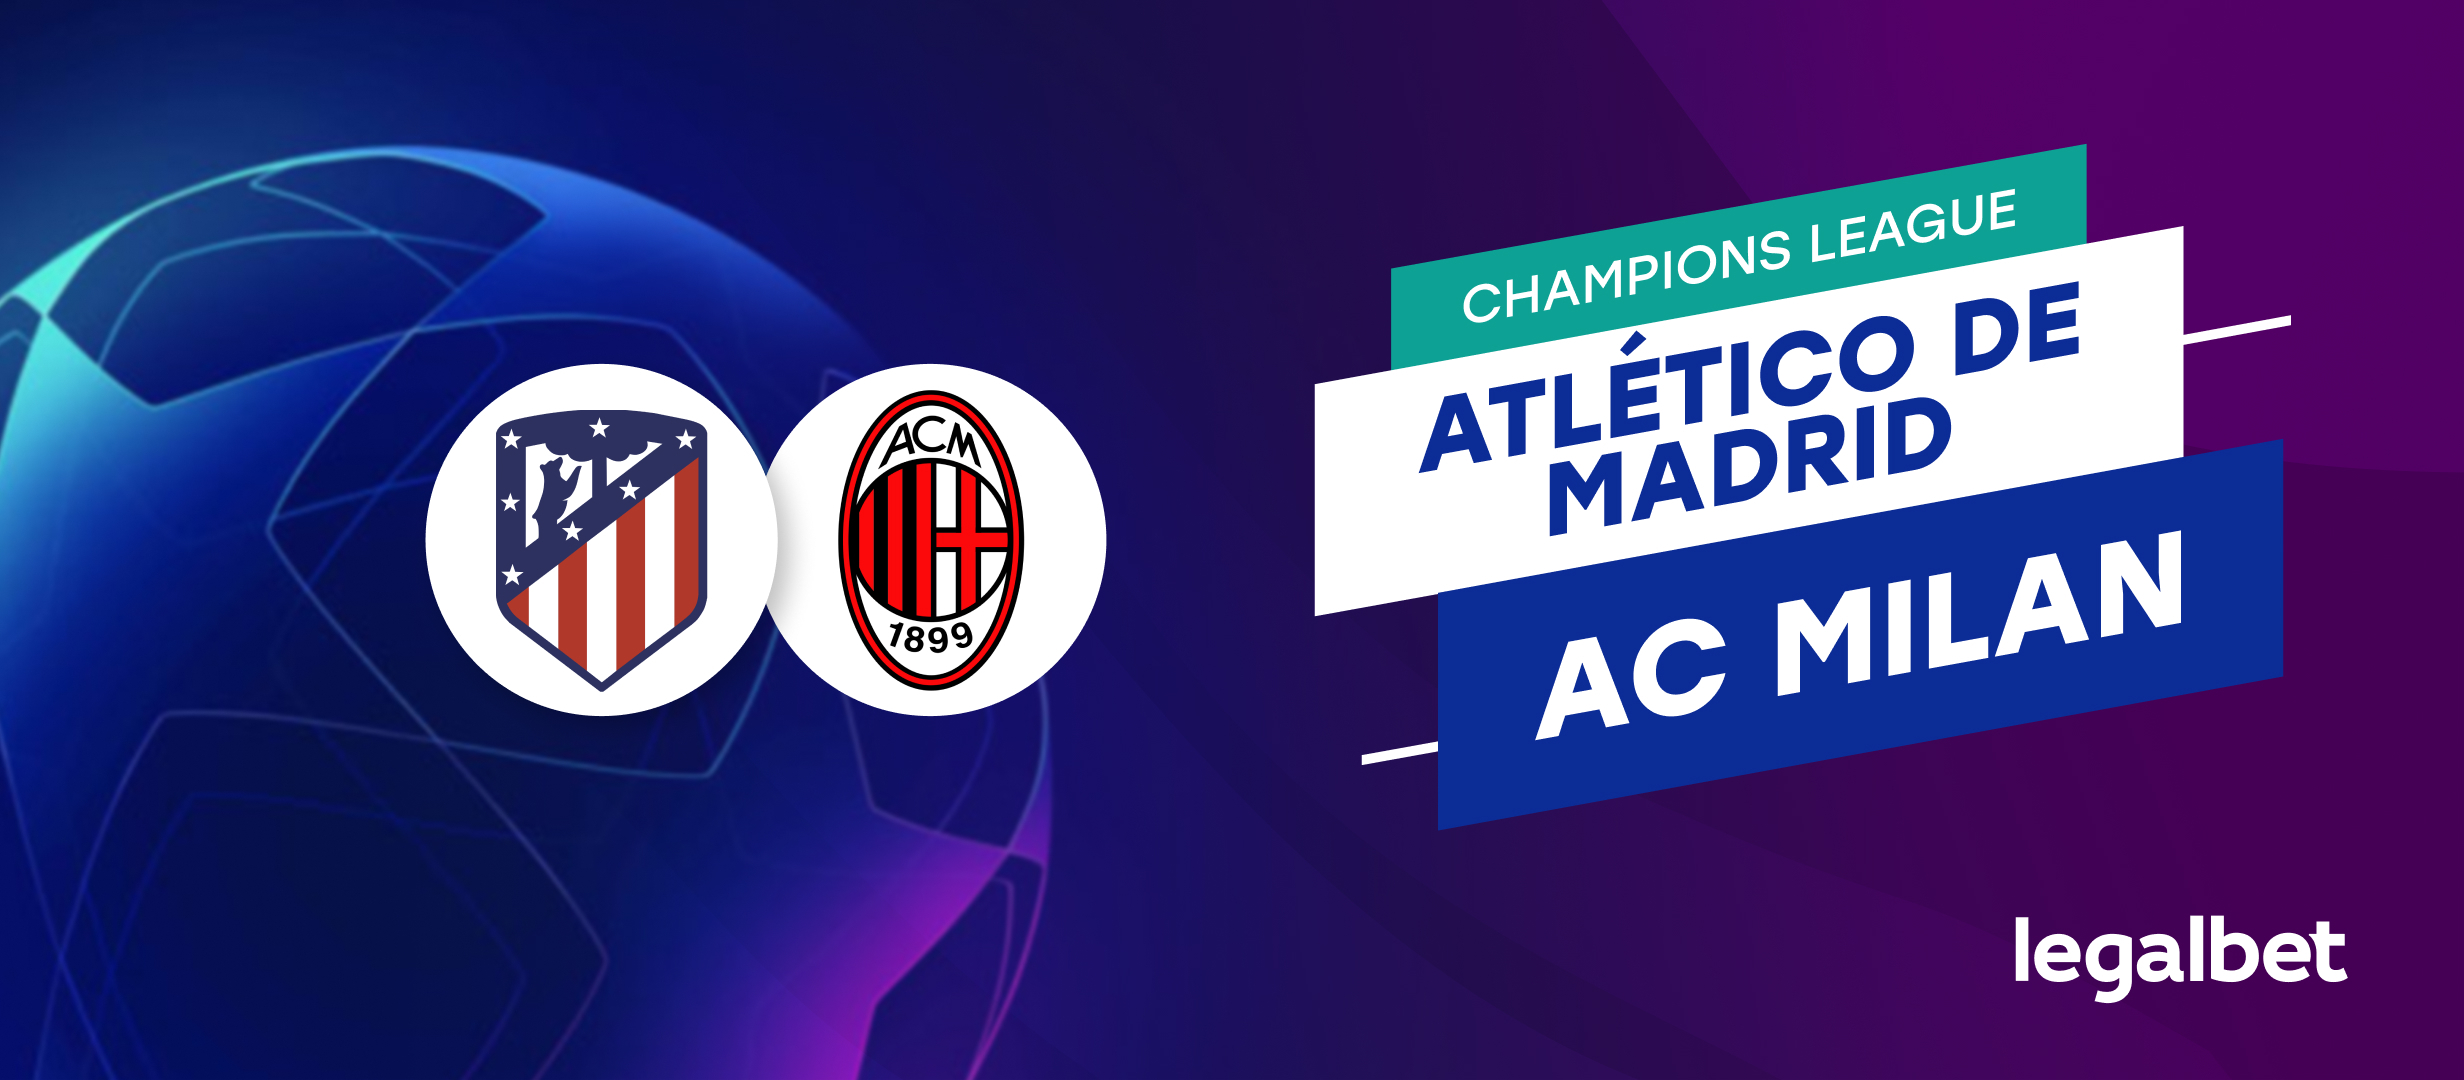 Apuestas y cuotas Atlético de Madrid - AC Milan, Champions League 2021/22